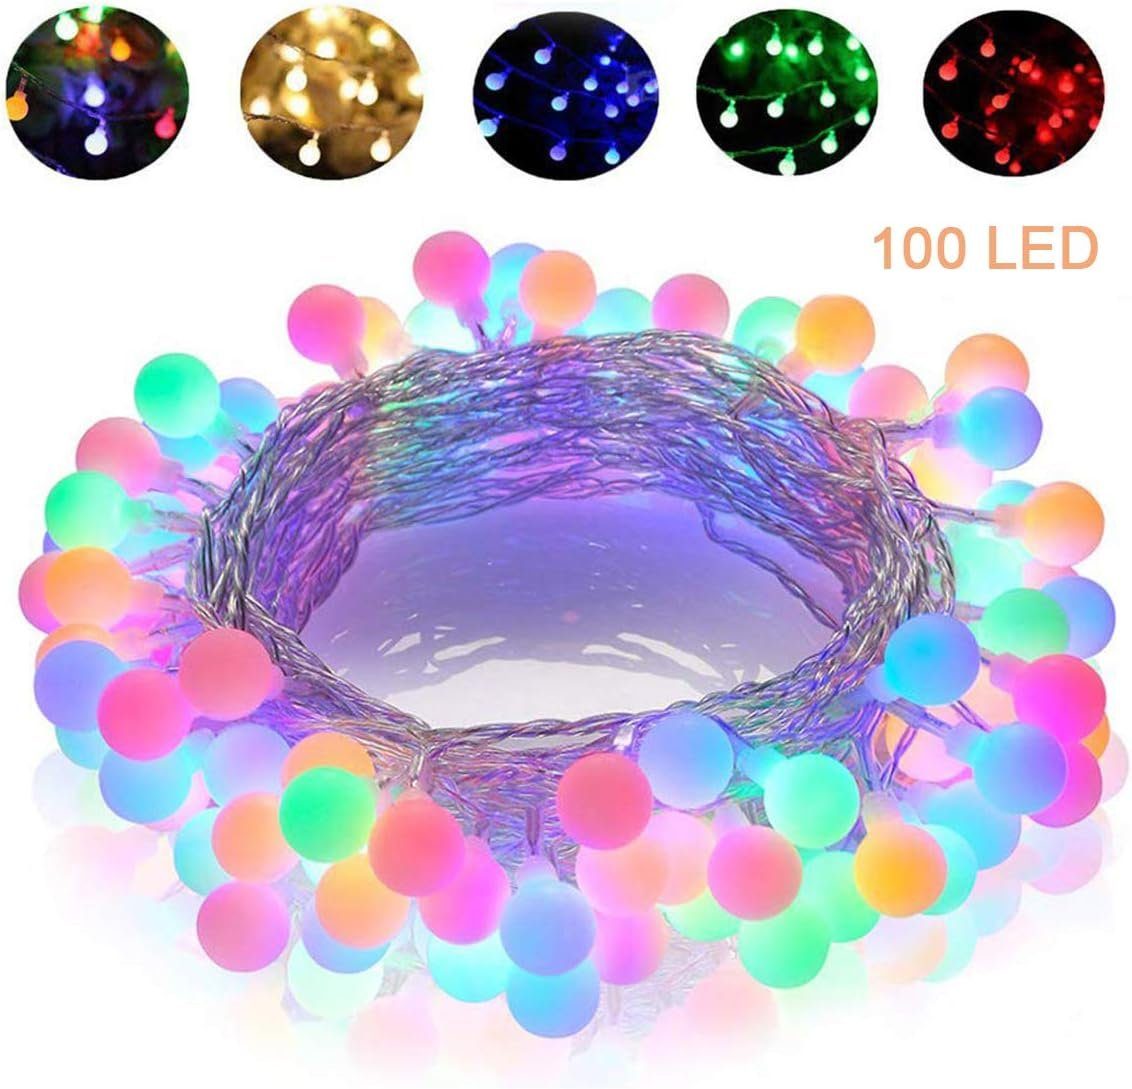 Jormftte LED-Lichterkette Mehrfarbige 10M 100 LEDs Lichterketten,8 Beleuchtungsmodi,für Party | Lichterketten